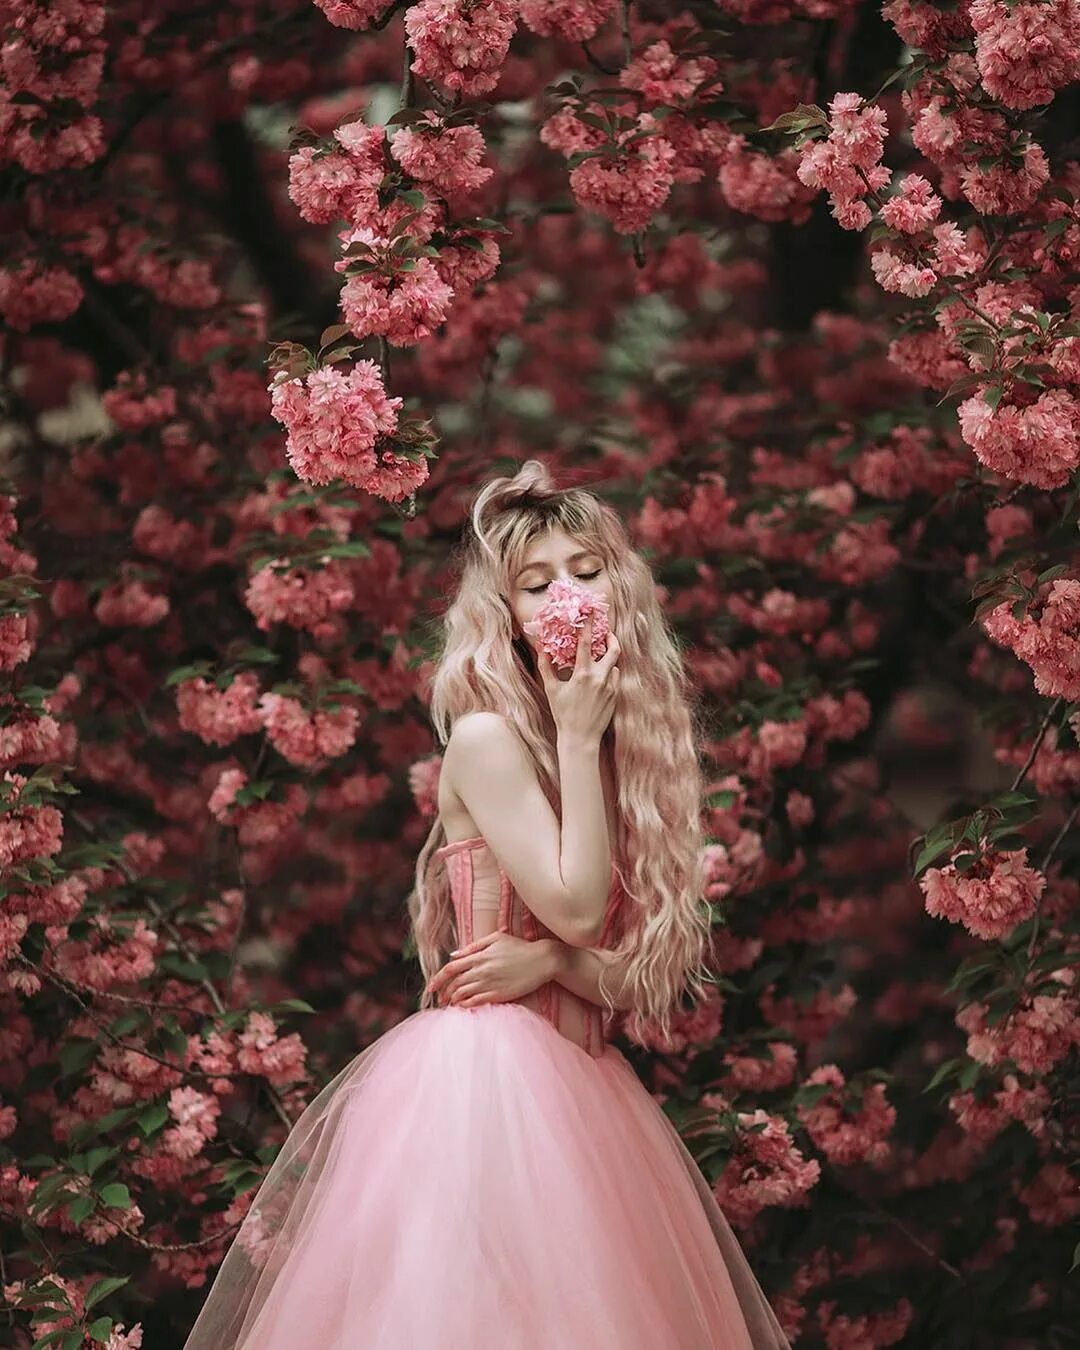 Цвет принцесс. Jovana Rikalo в платье. Принцесса в цветах. Принцесса фотосессия. Девушка в пышном платье весной.